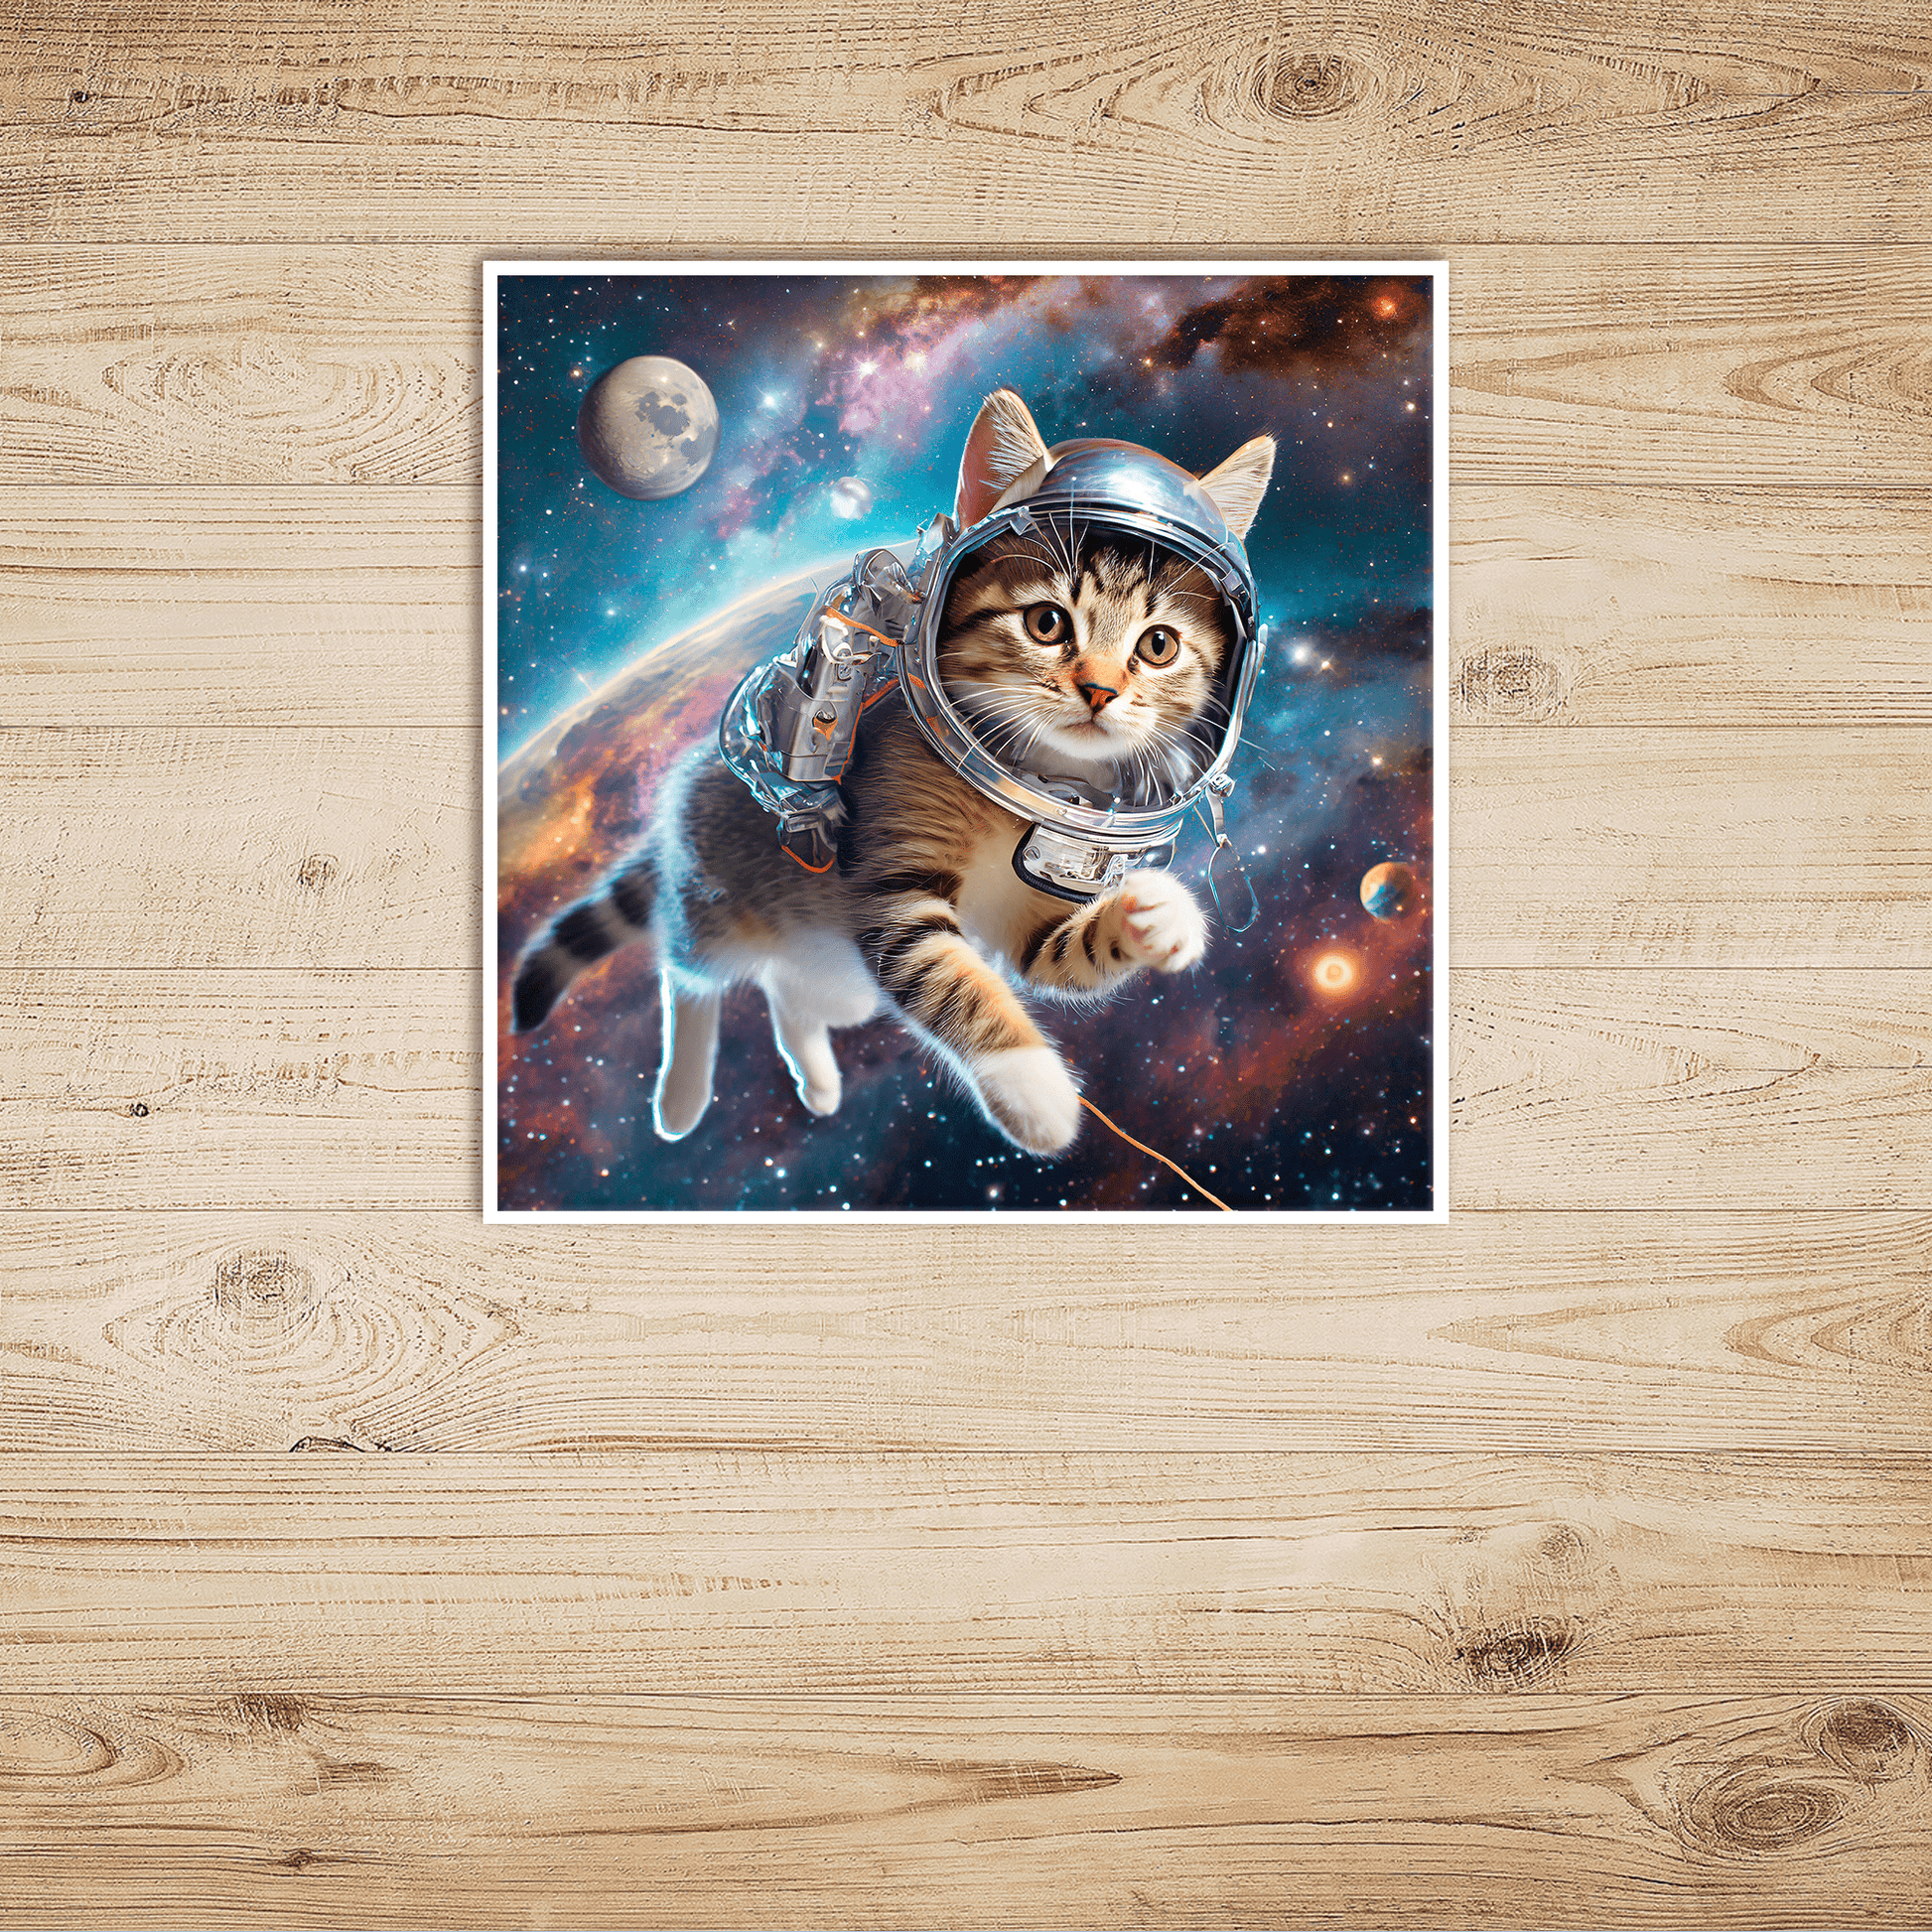 Space Kitty Chasing Cosmic String - Art Print - Unframed - Premium Archival Matte Fine Art Paper